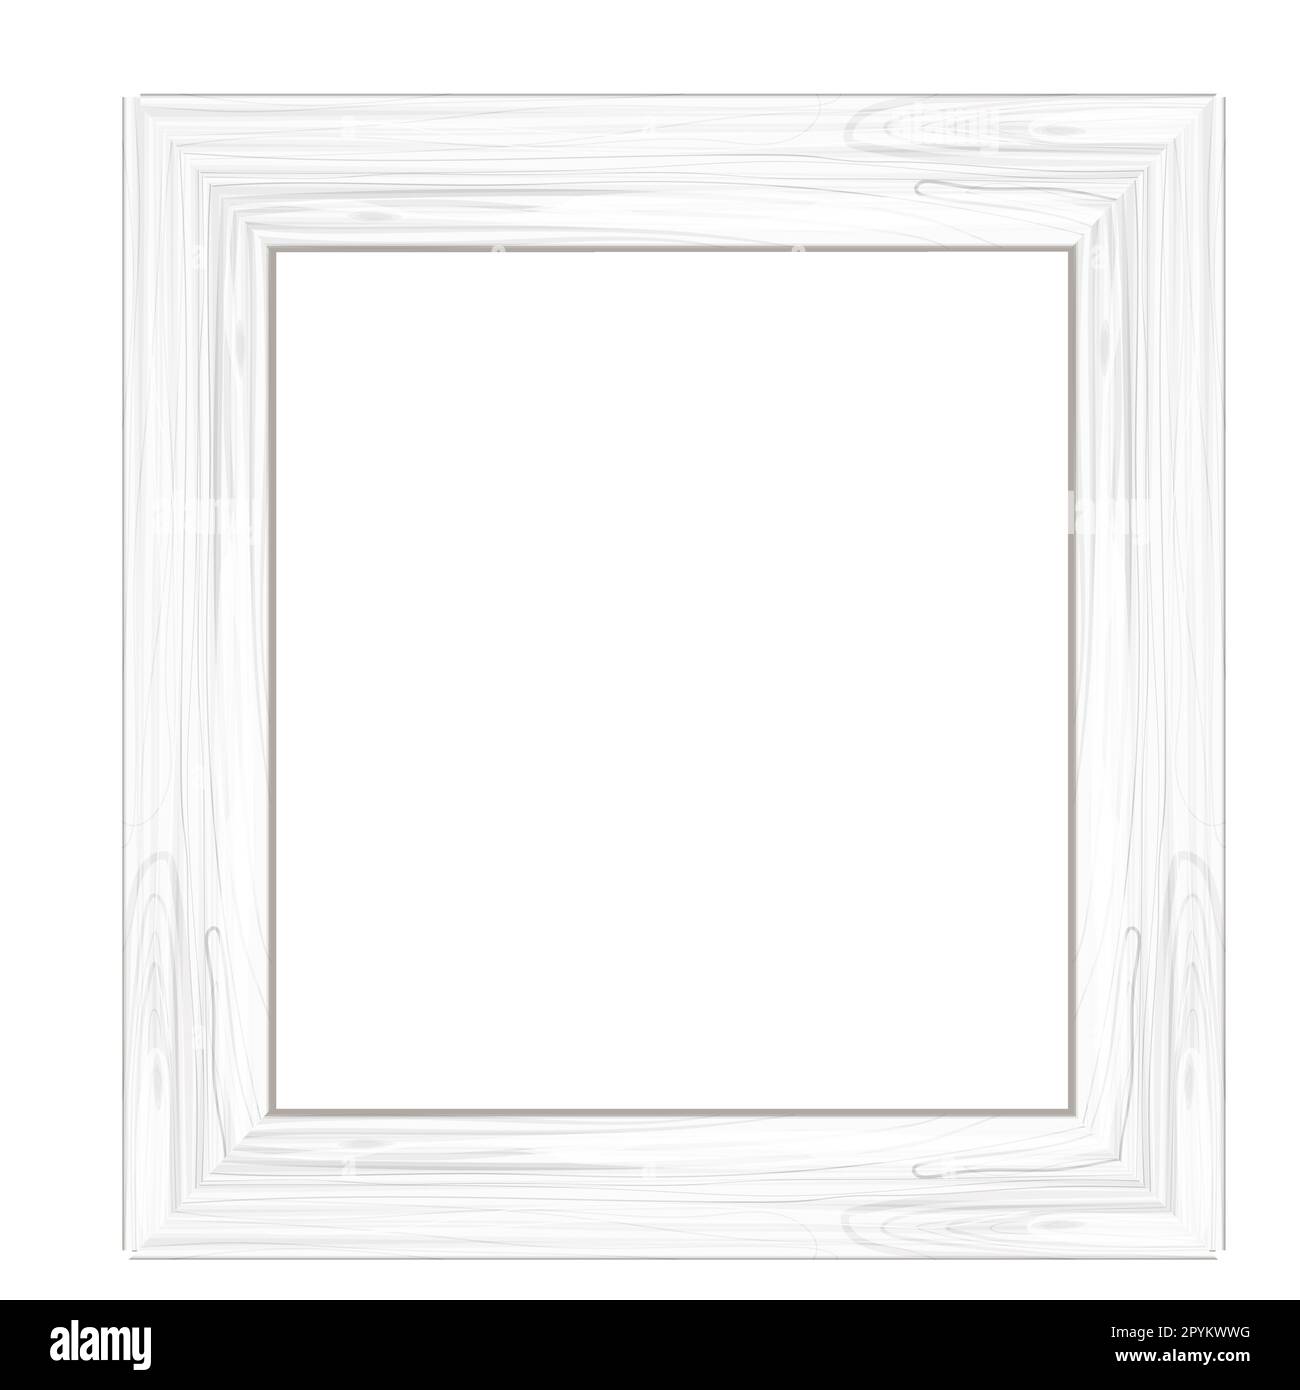 Cornice bianca in legno, bordo testurizzato e dettagliato in stile cartoon  isolato su sfondo bianco. Rustico, retrò. Illustrazione vettoriale Immagine  e Vettoriale - Alamy